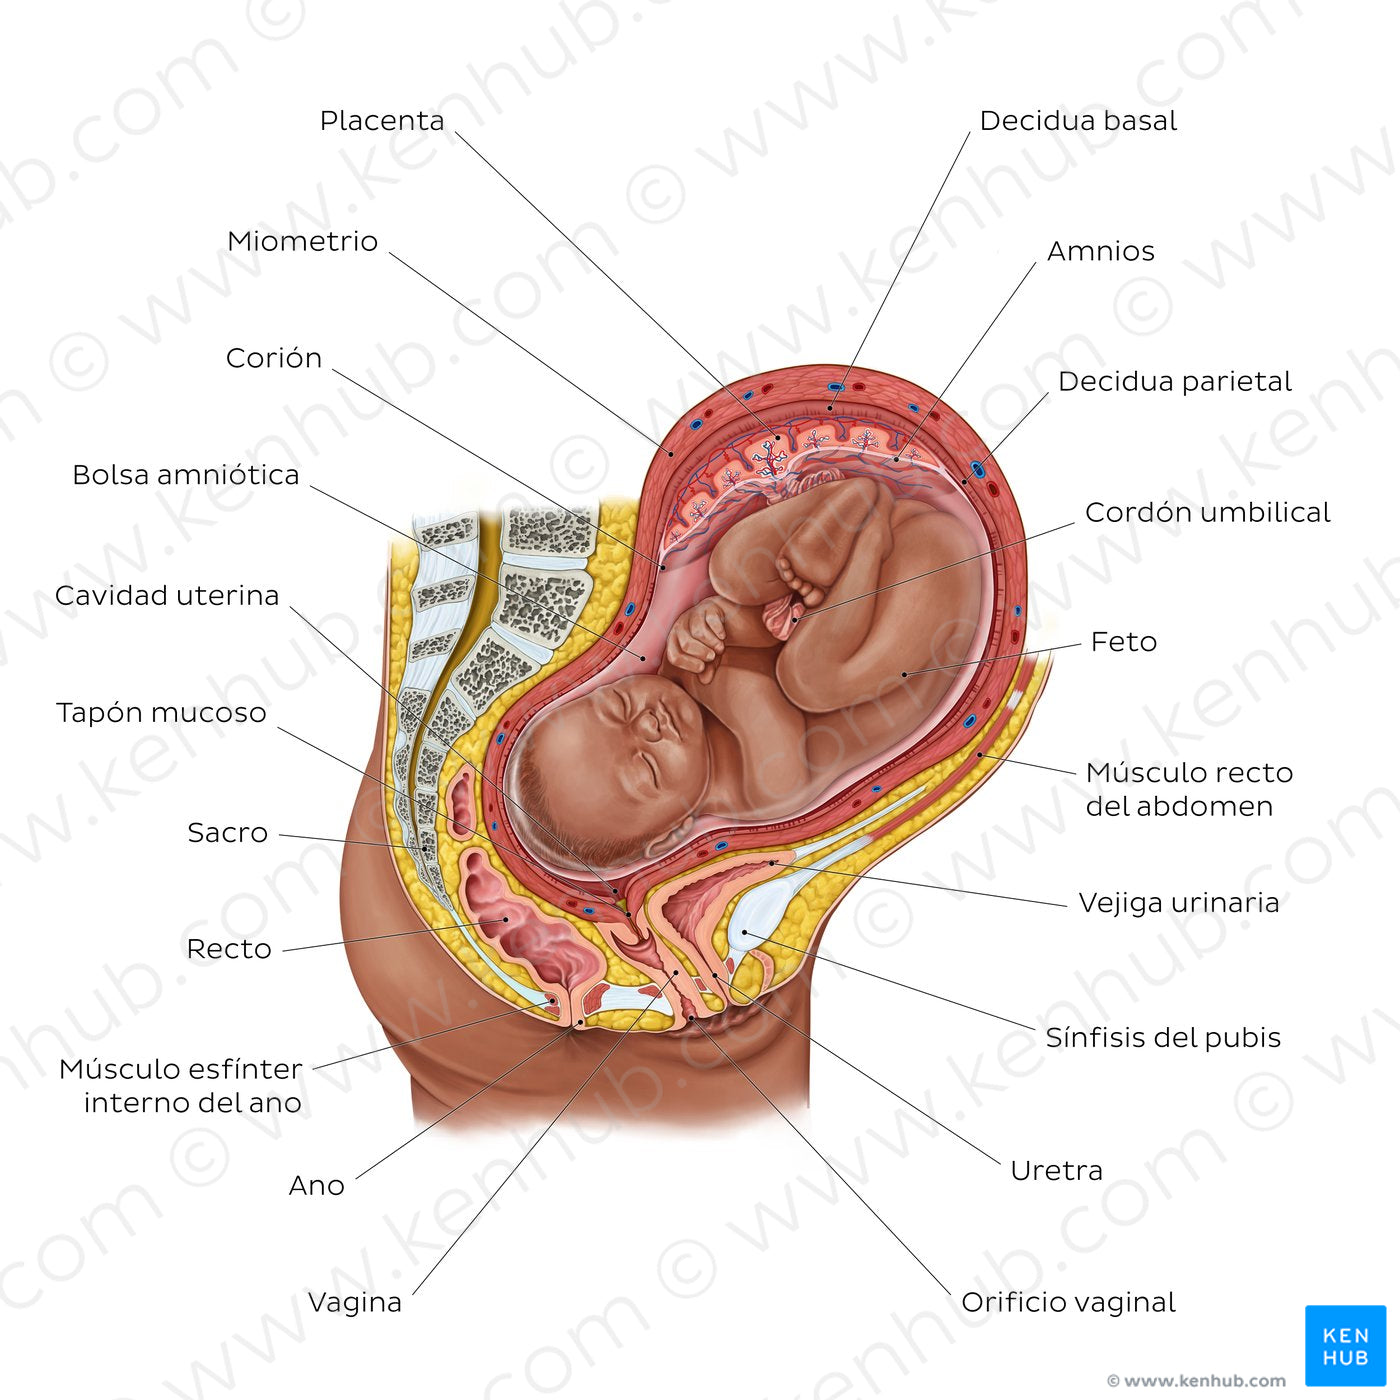 Fetus in utero (Spanish)